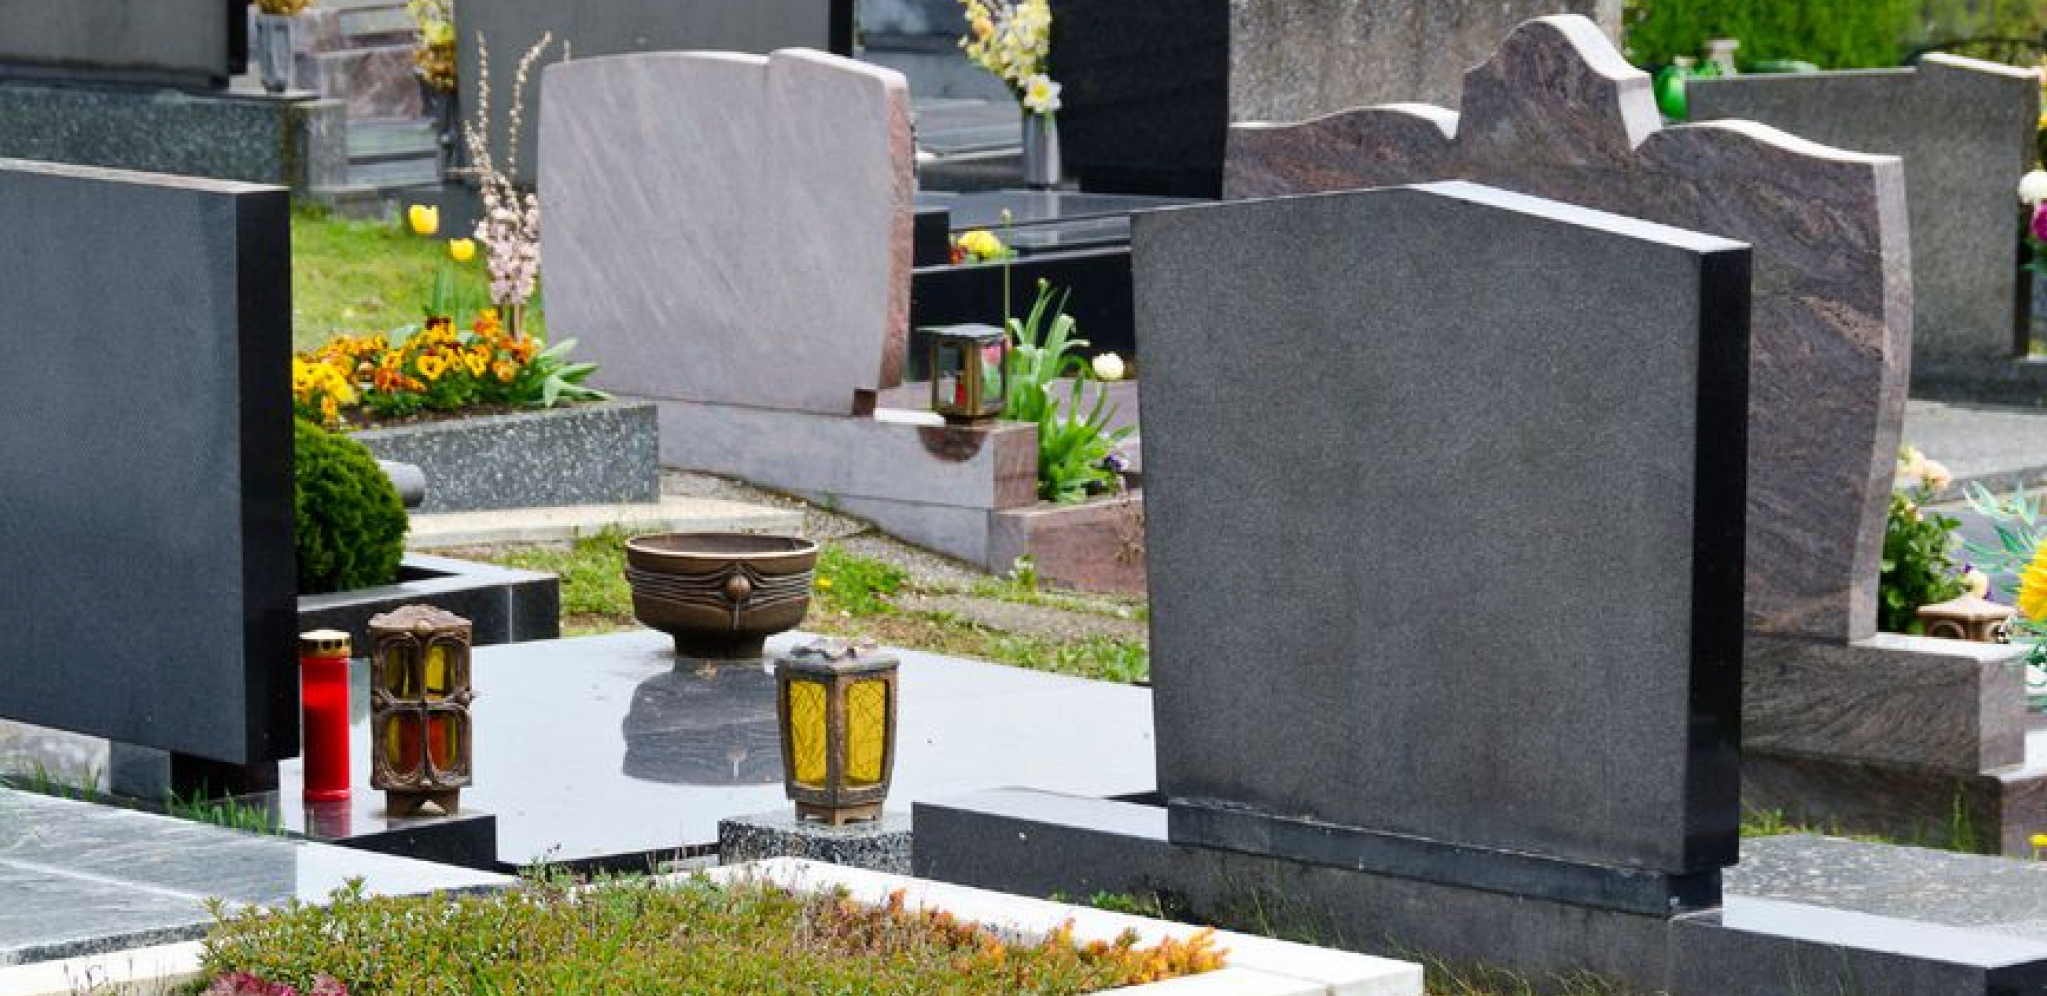 OVO SIGURNO NISTE ZNALI Pre nego što odete na groblje, stavite sveće u zamrzivač